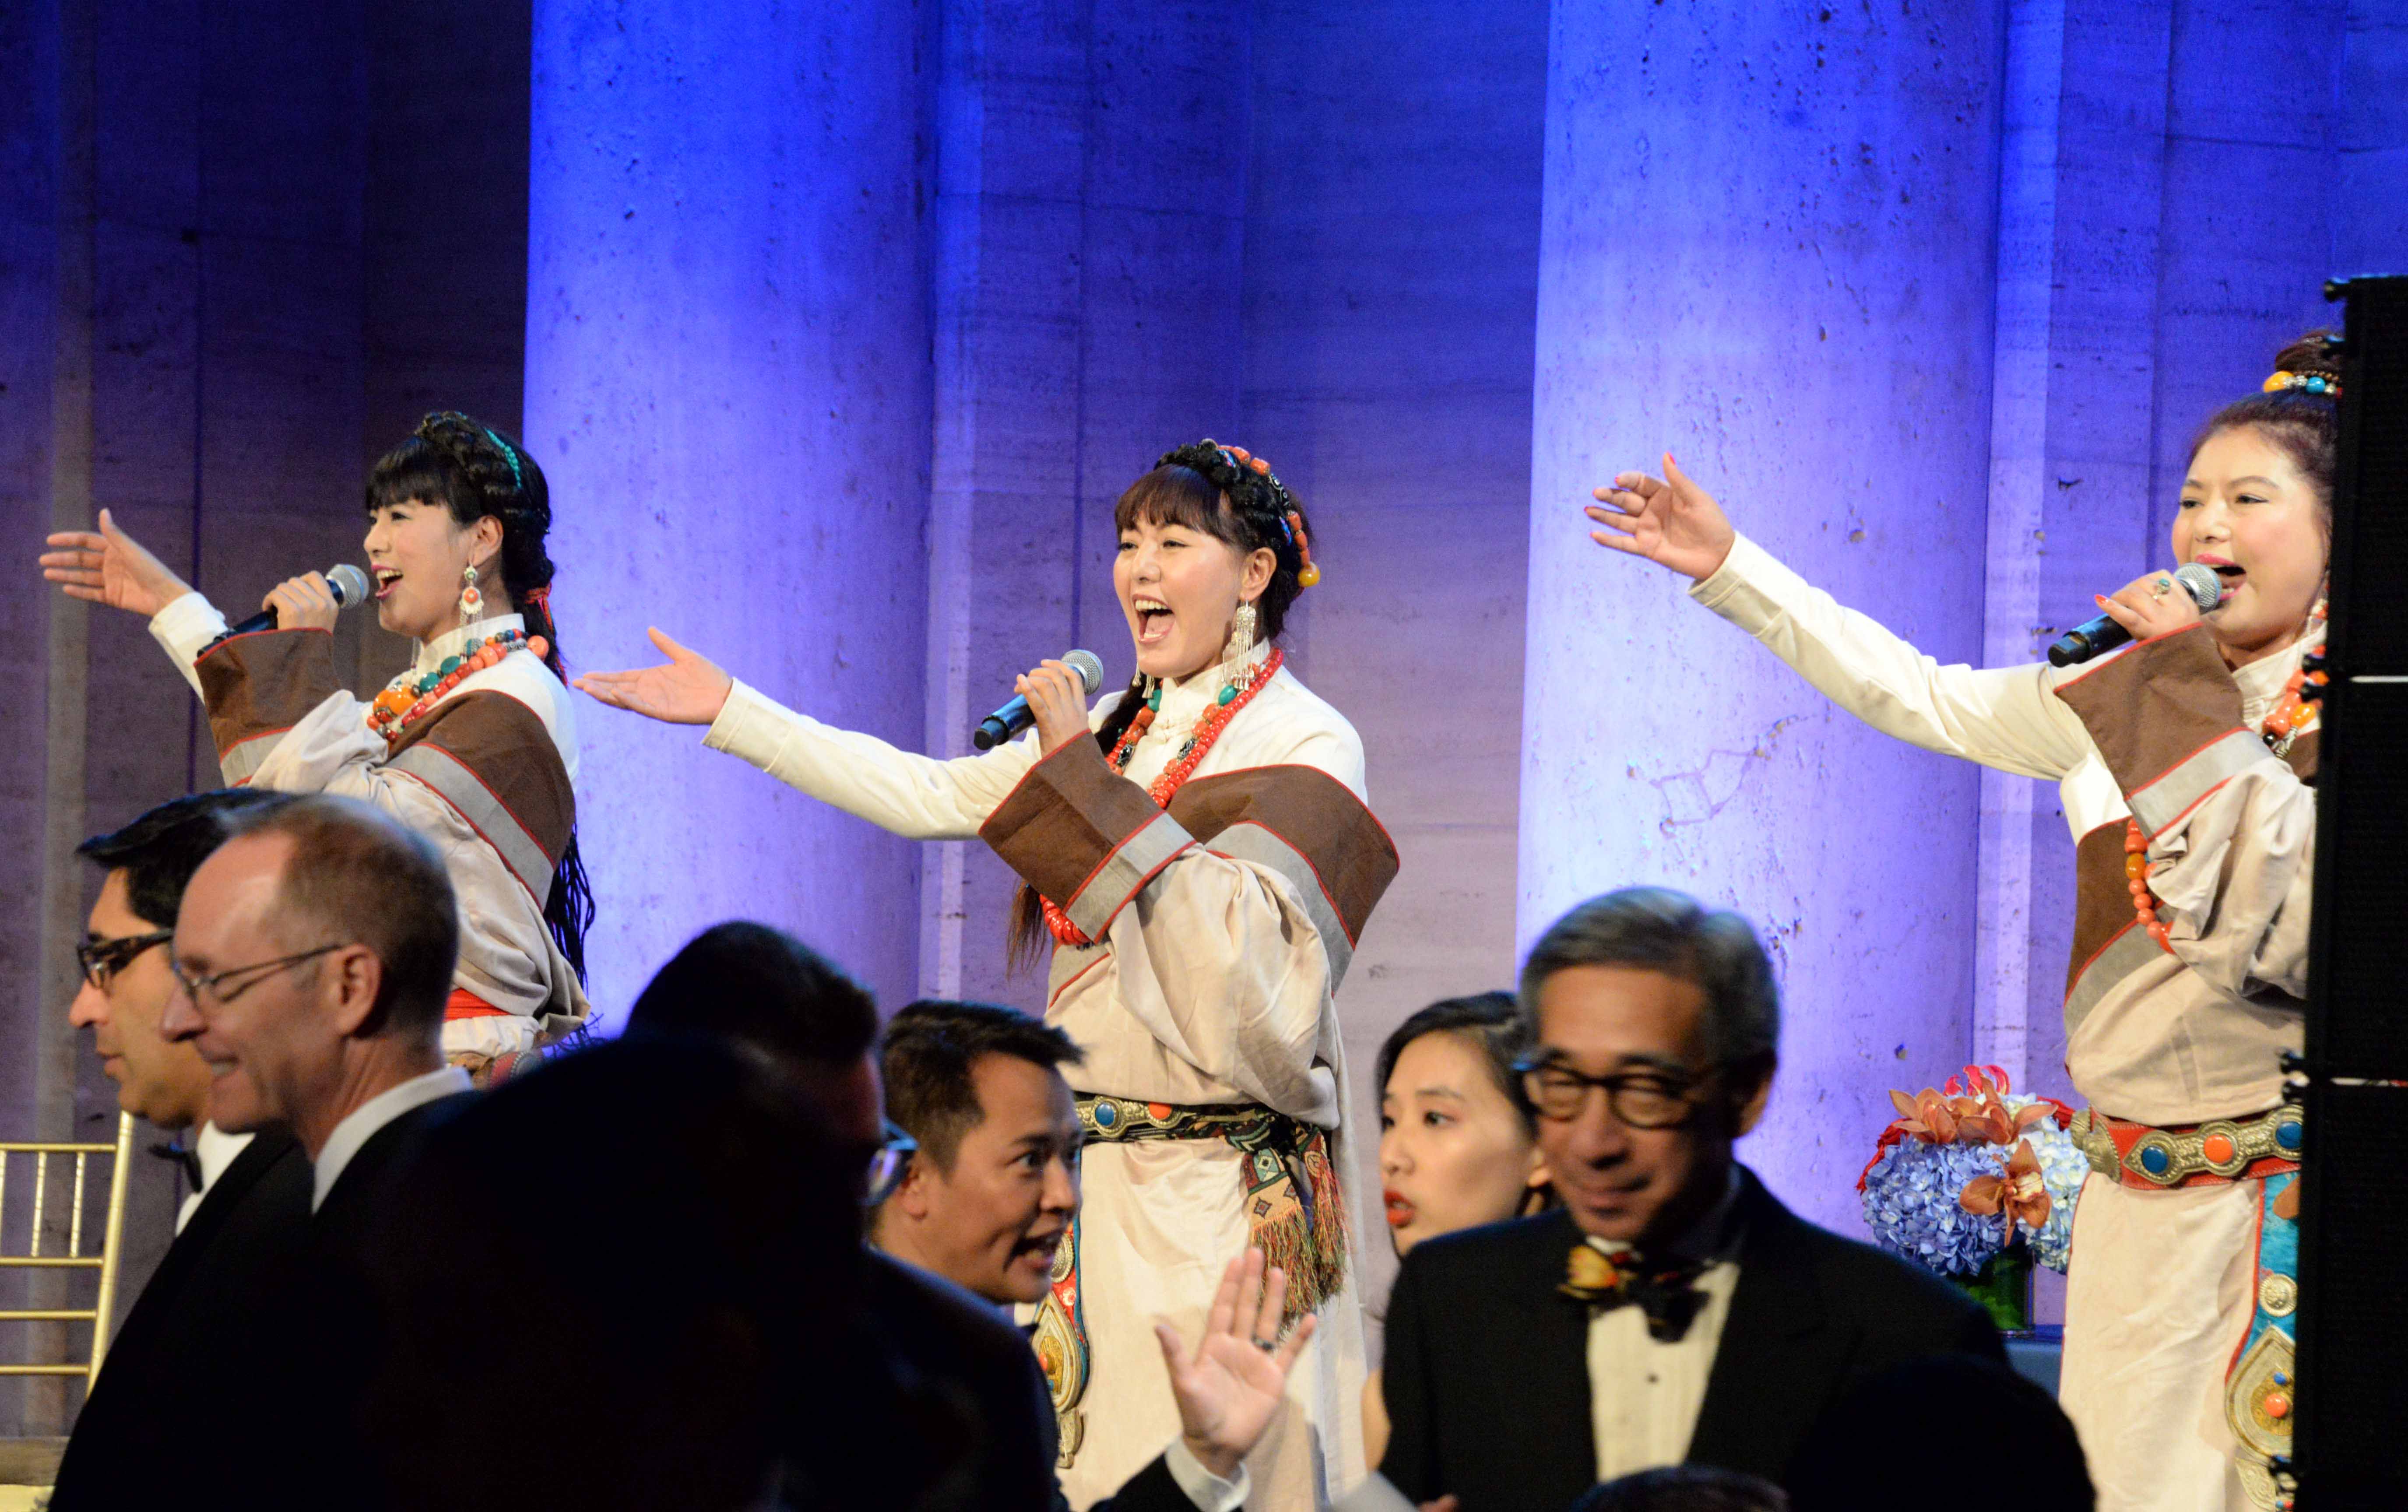 女子合唱团体雪莲三姐妹为嘉宾表演藏族歌曲